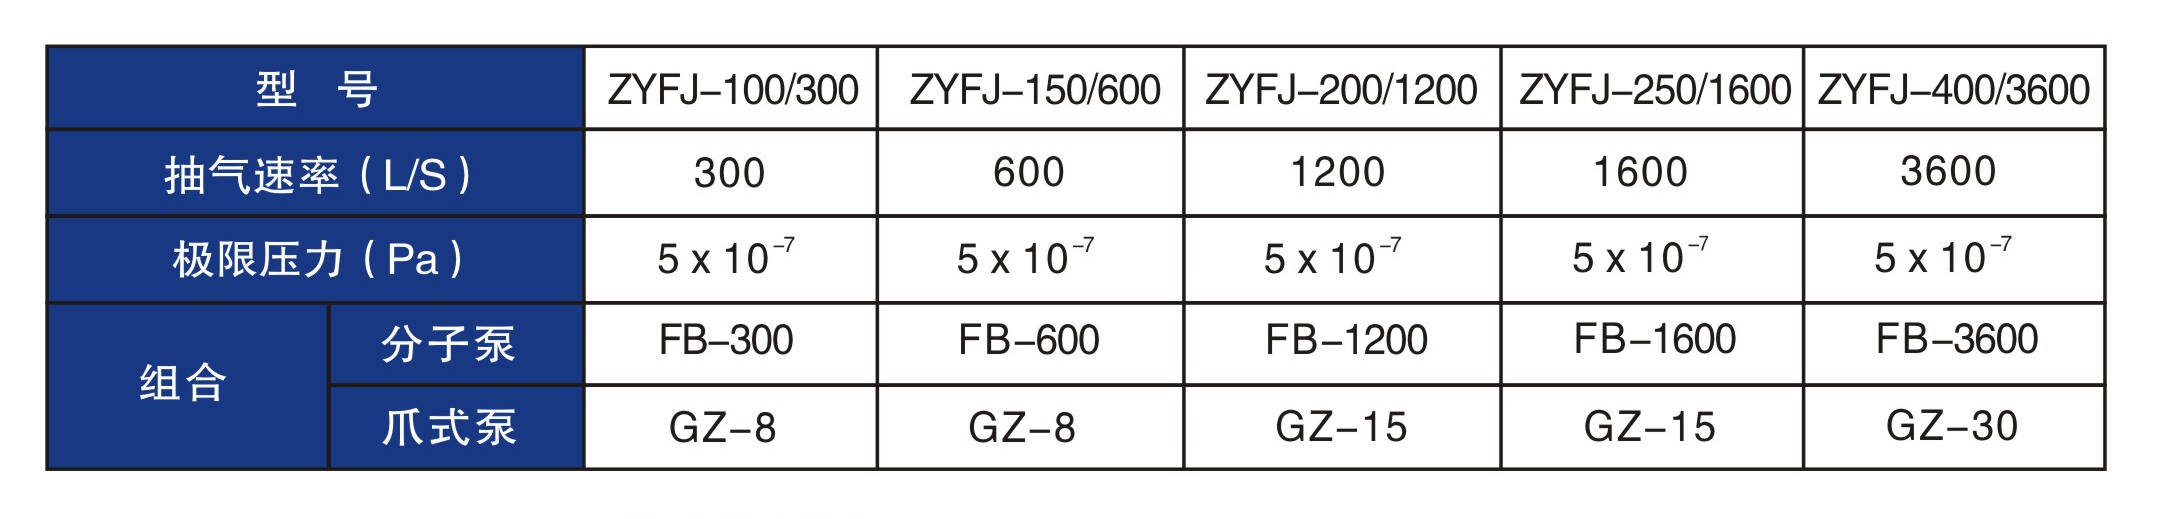 干式分子機組ZYFJ技術參數表